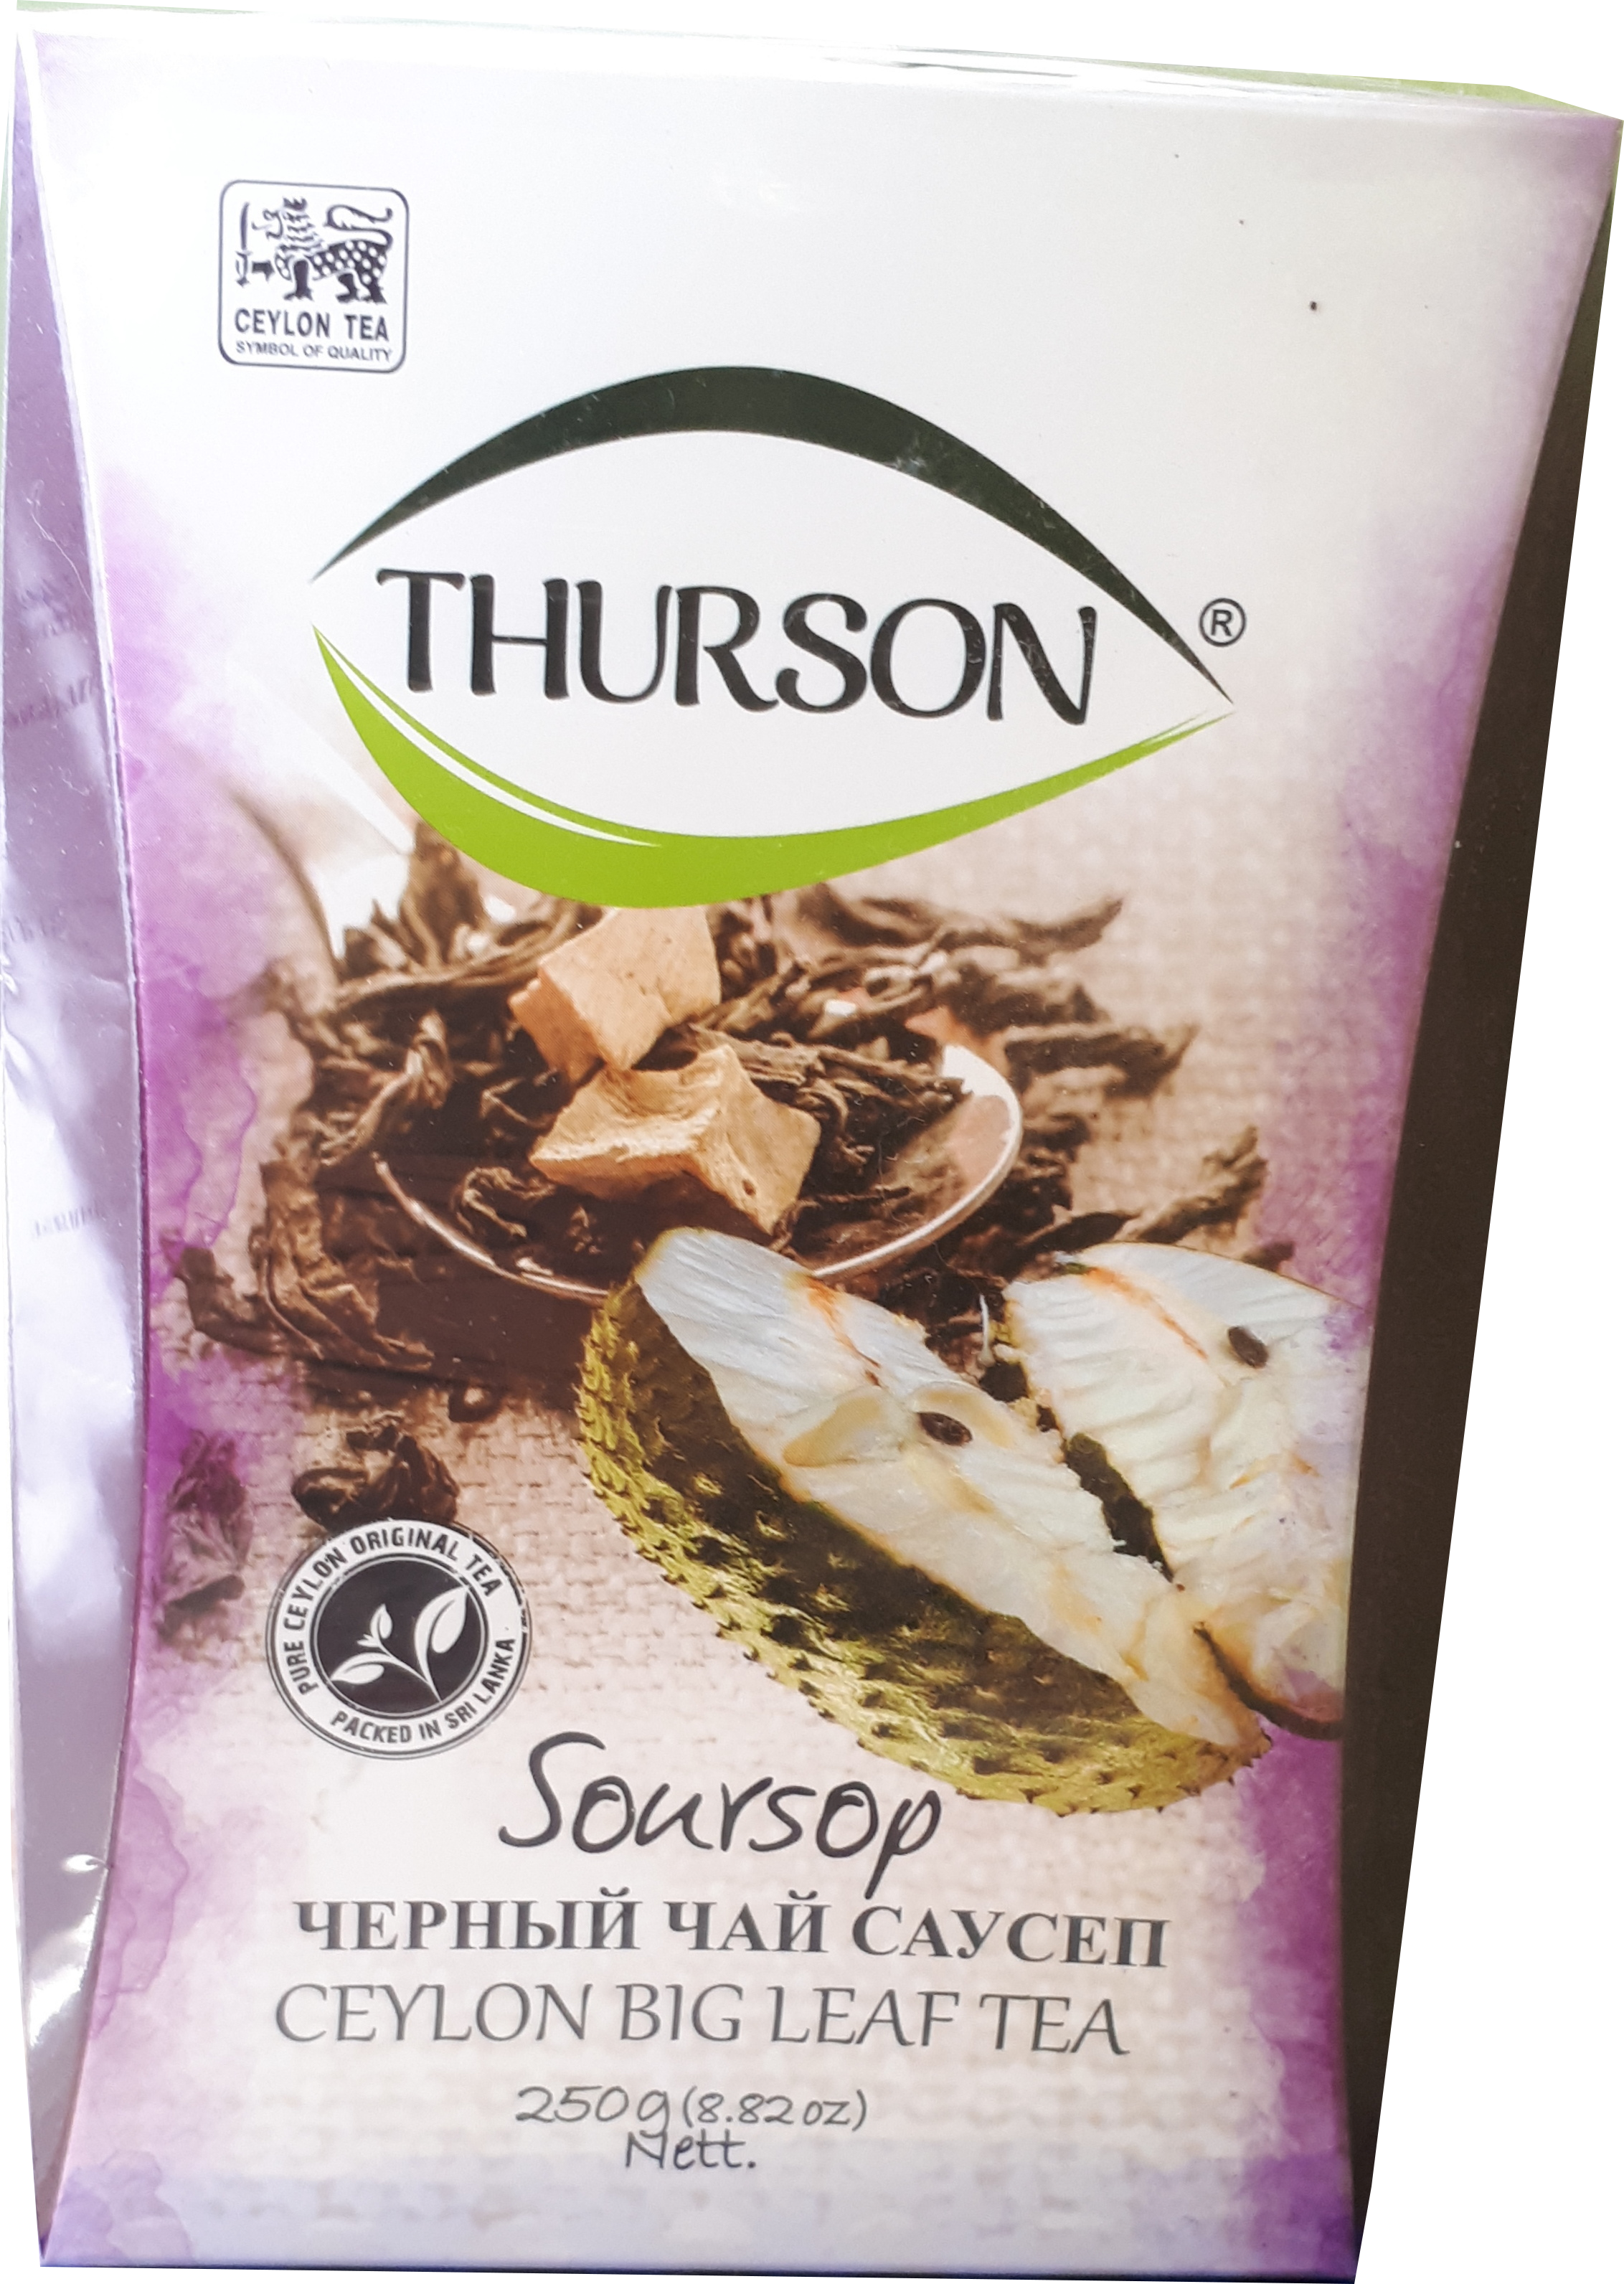 Чай с саусепом купить. Чай Турсон с саусепом. Чай черный Саусеп Турсон. Чай Thurson черный с саусепом 250 гр. Цейлонский чай с саусепом.